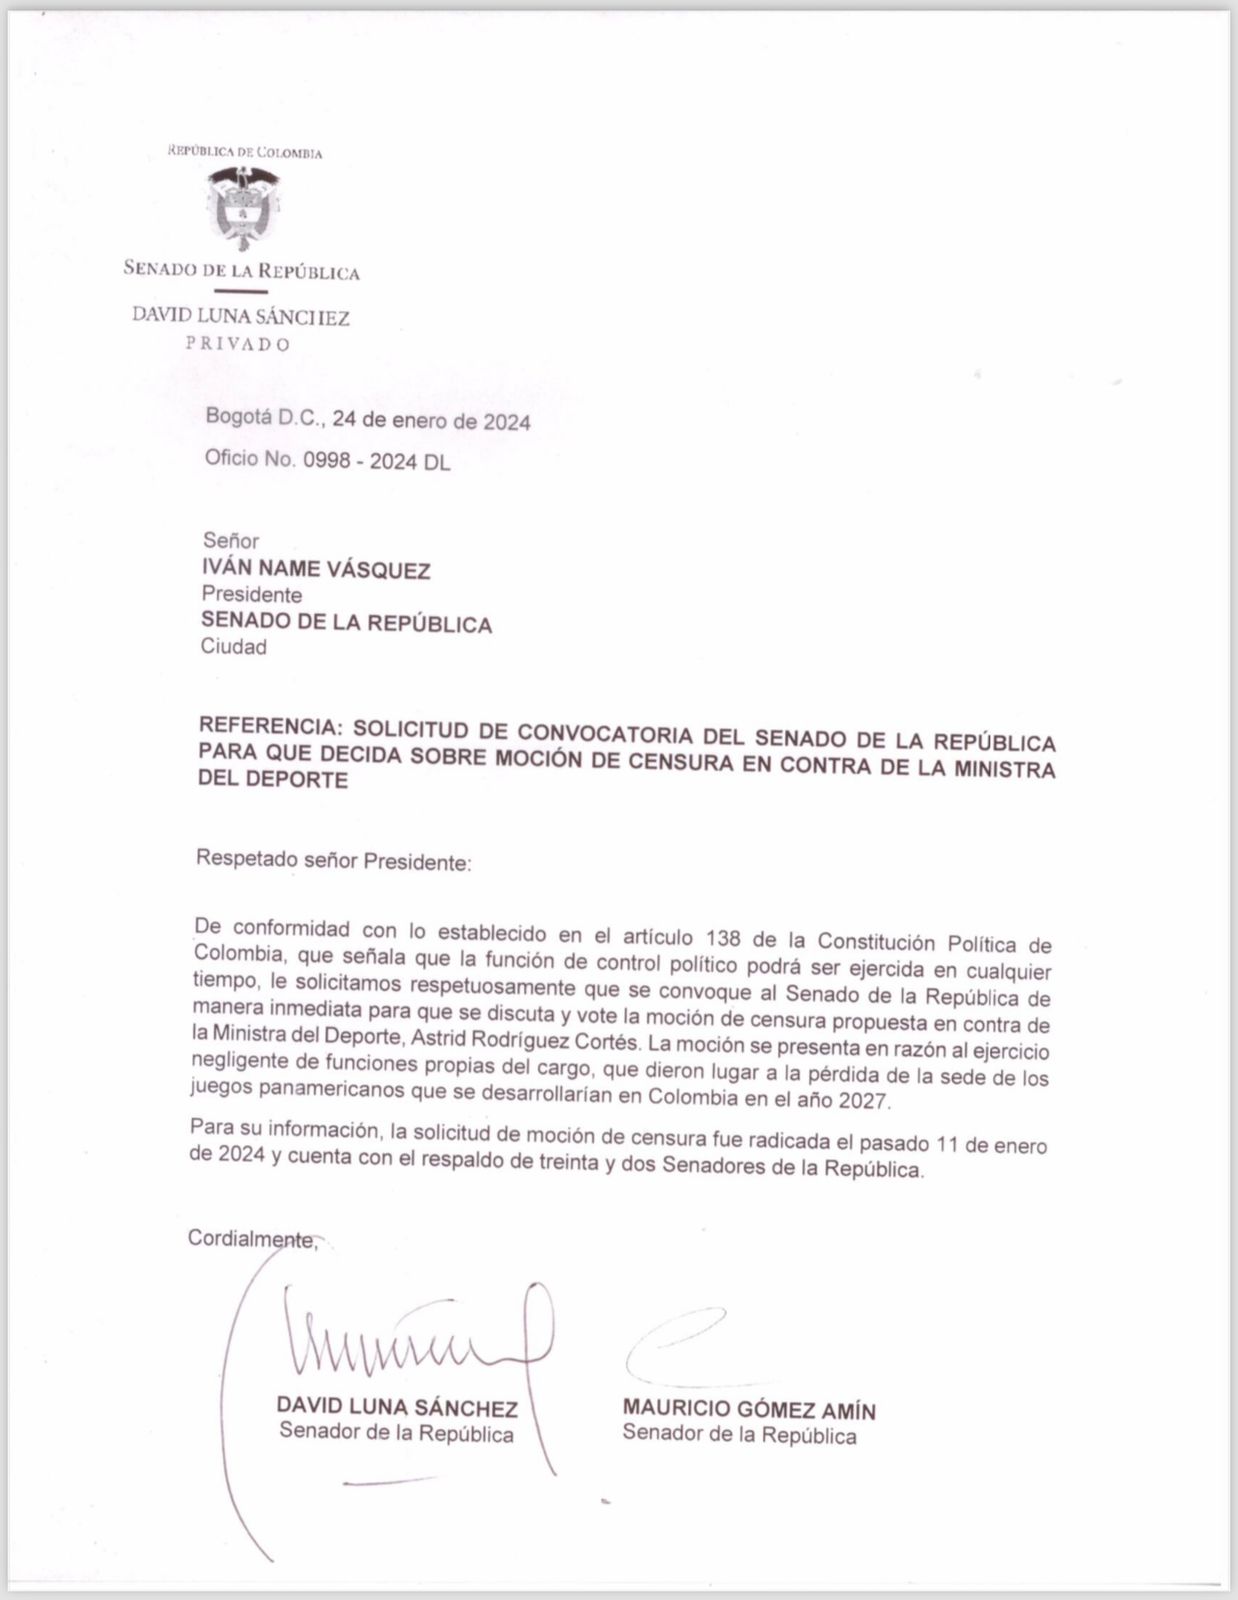 La solicitud de convocatoria para discutir y votar moción de censura en contra de la Ministra del Deporte, Astrid Rodríguez